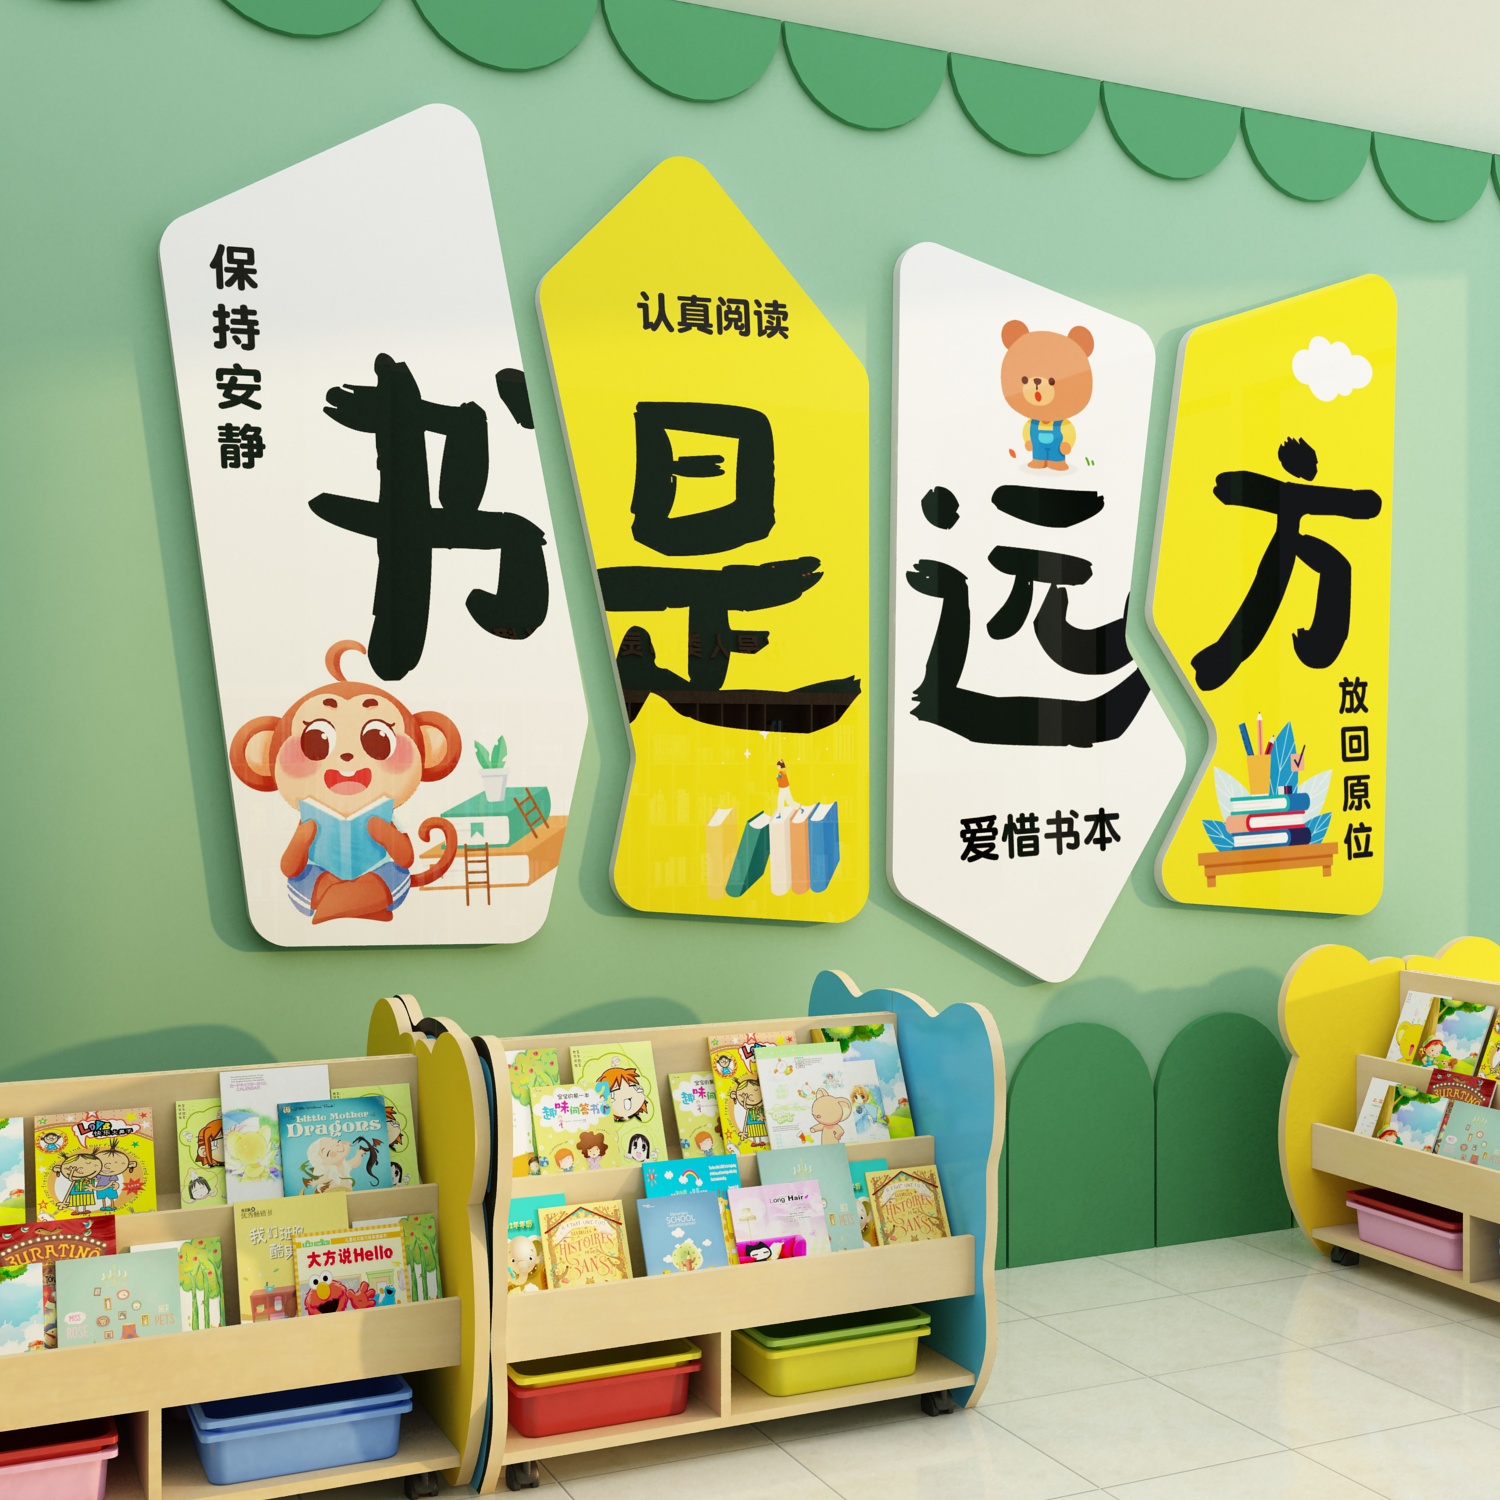 图书角布置装饰画儿童阅读区阅览室幼儿园绘本馆环创背景文化墙贴